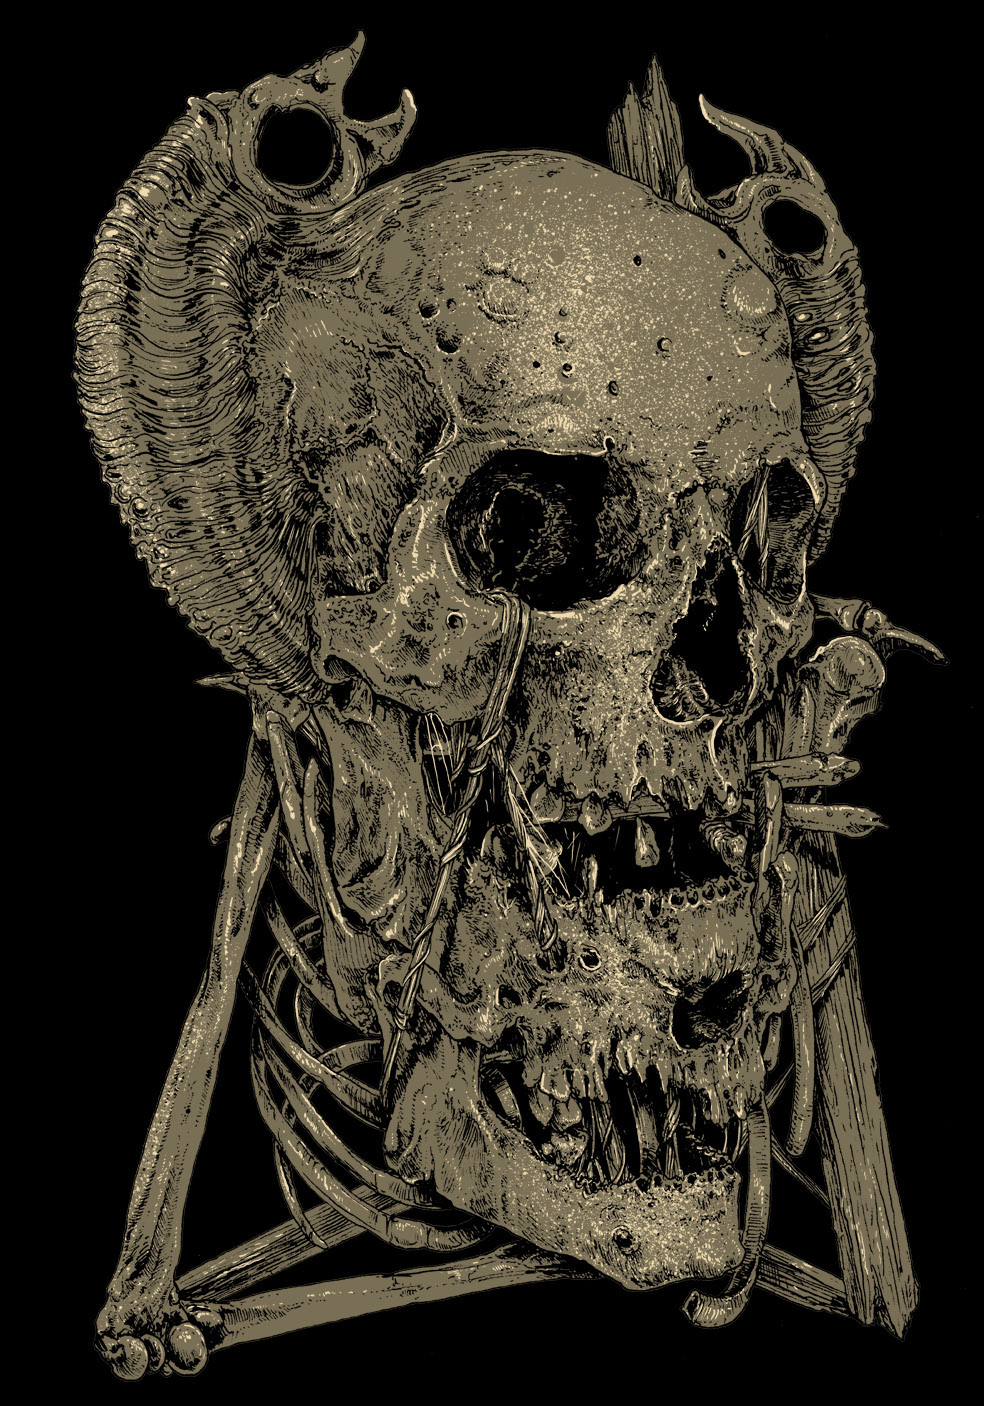 skull skulls too many skulls poster t-shirt T-Shirt designs dark evil autumn